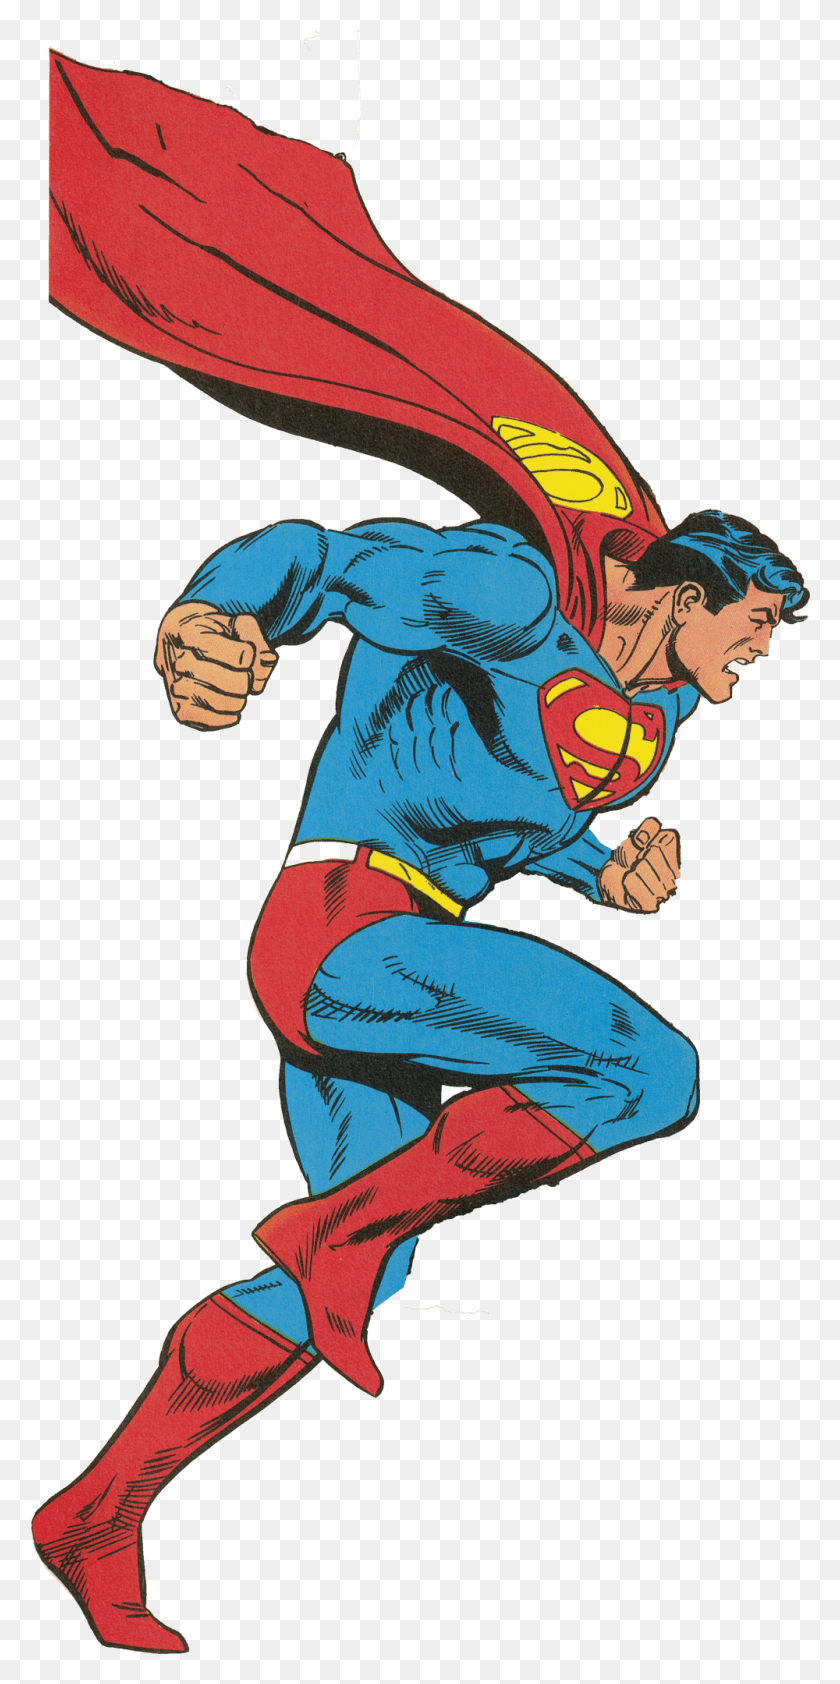 1000x2083 Descargar Png Picture Of Superman Superman Vs Wonder Woman Edición Coleccionista, Persona, Humano, Brazo Hd Png